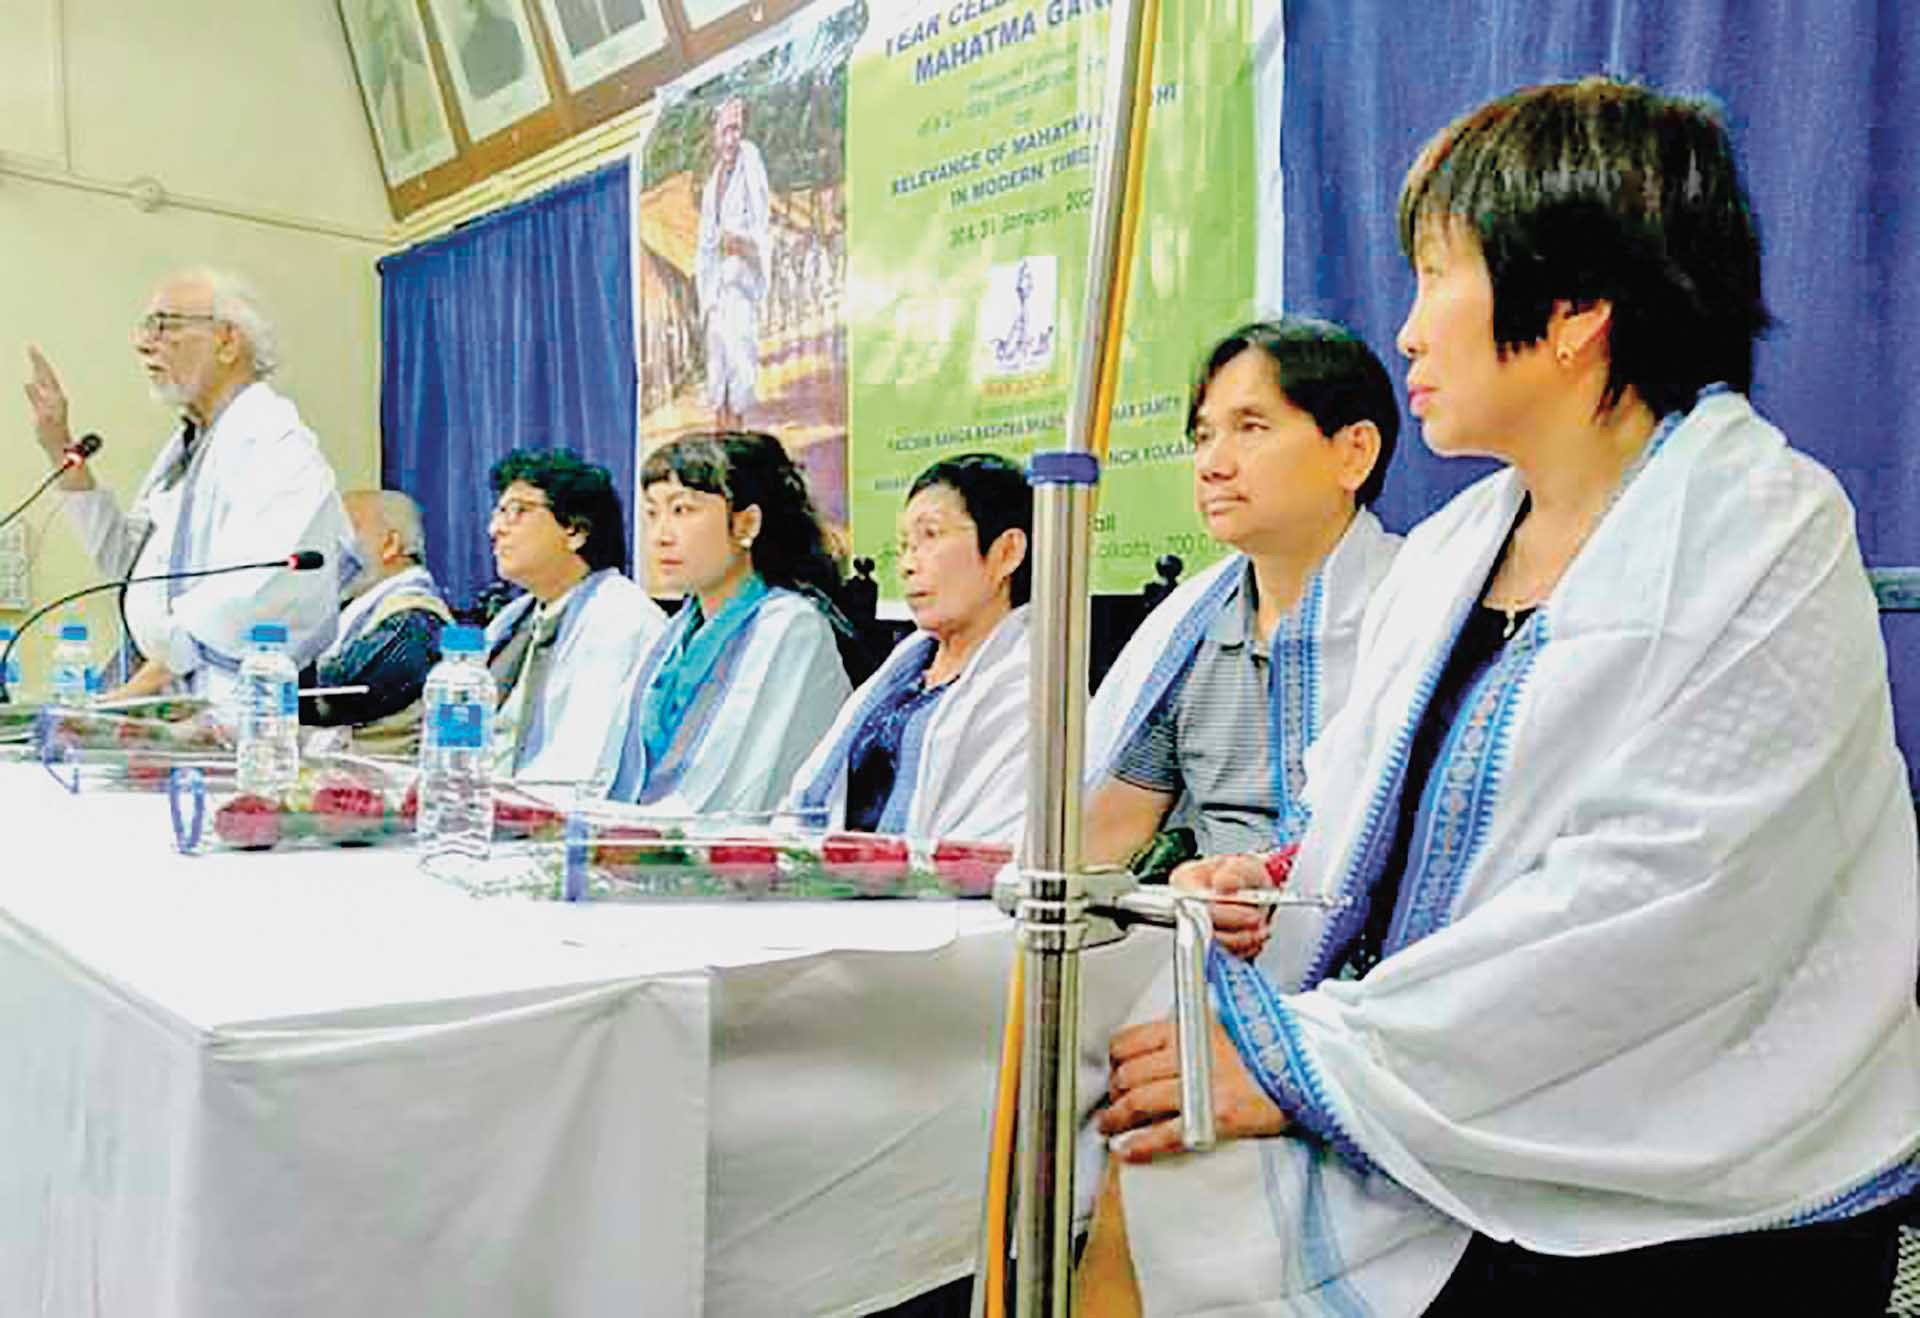 Đoàn nhà văn Việt Nam là đoàn đại biểu duy nhất được mời ngồi trên khán đài trong buổi lễ khai mạc Hội chợ triển lãm sách quốc tế tại thành phố Kolkata, bang Tây Bengal, Ấn Độ. (Ảnh: TGCC)